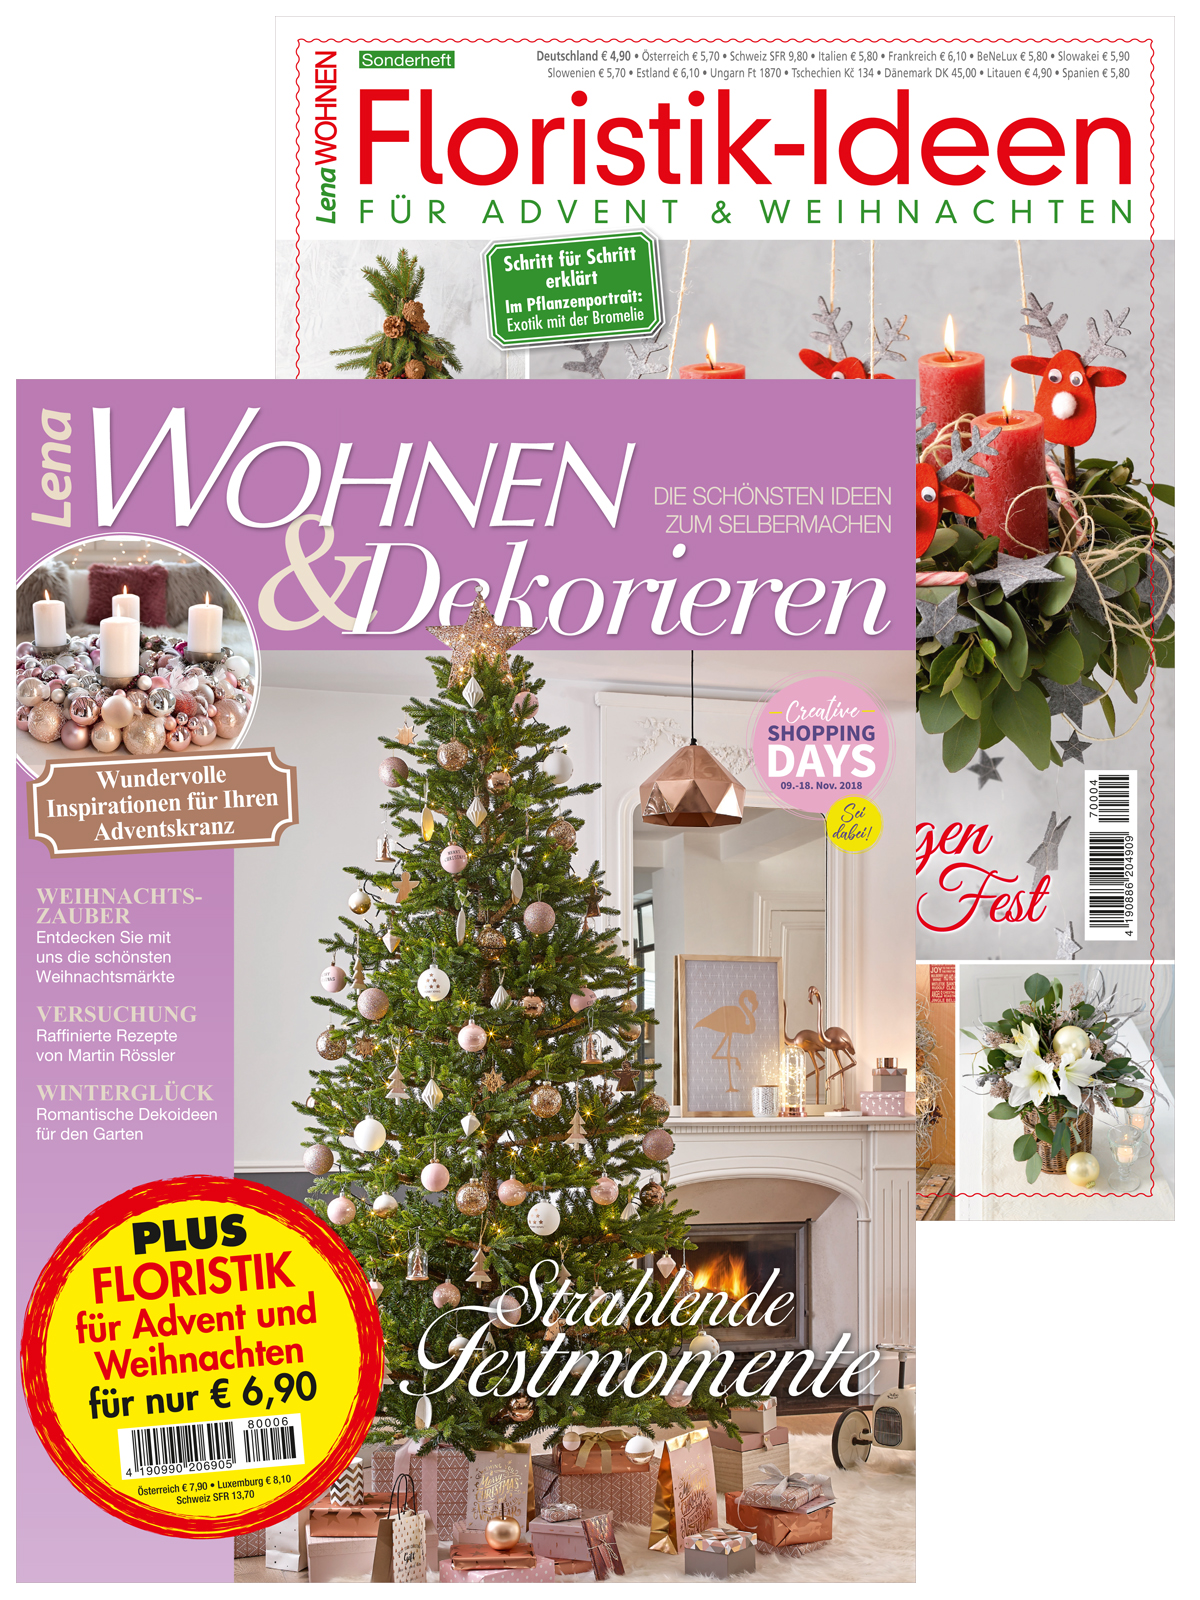 Lena Wohnen & Dekorieren - Bundle: Lena Wohnen & Dekorieren Nr. 06/2018 + "Floristik-Ideen für Advent & Weihnachten" Sonderheft